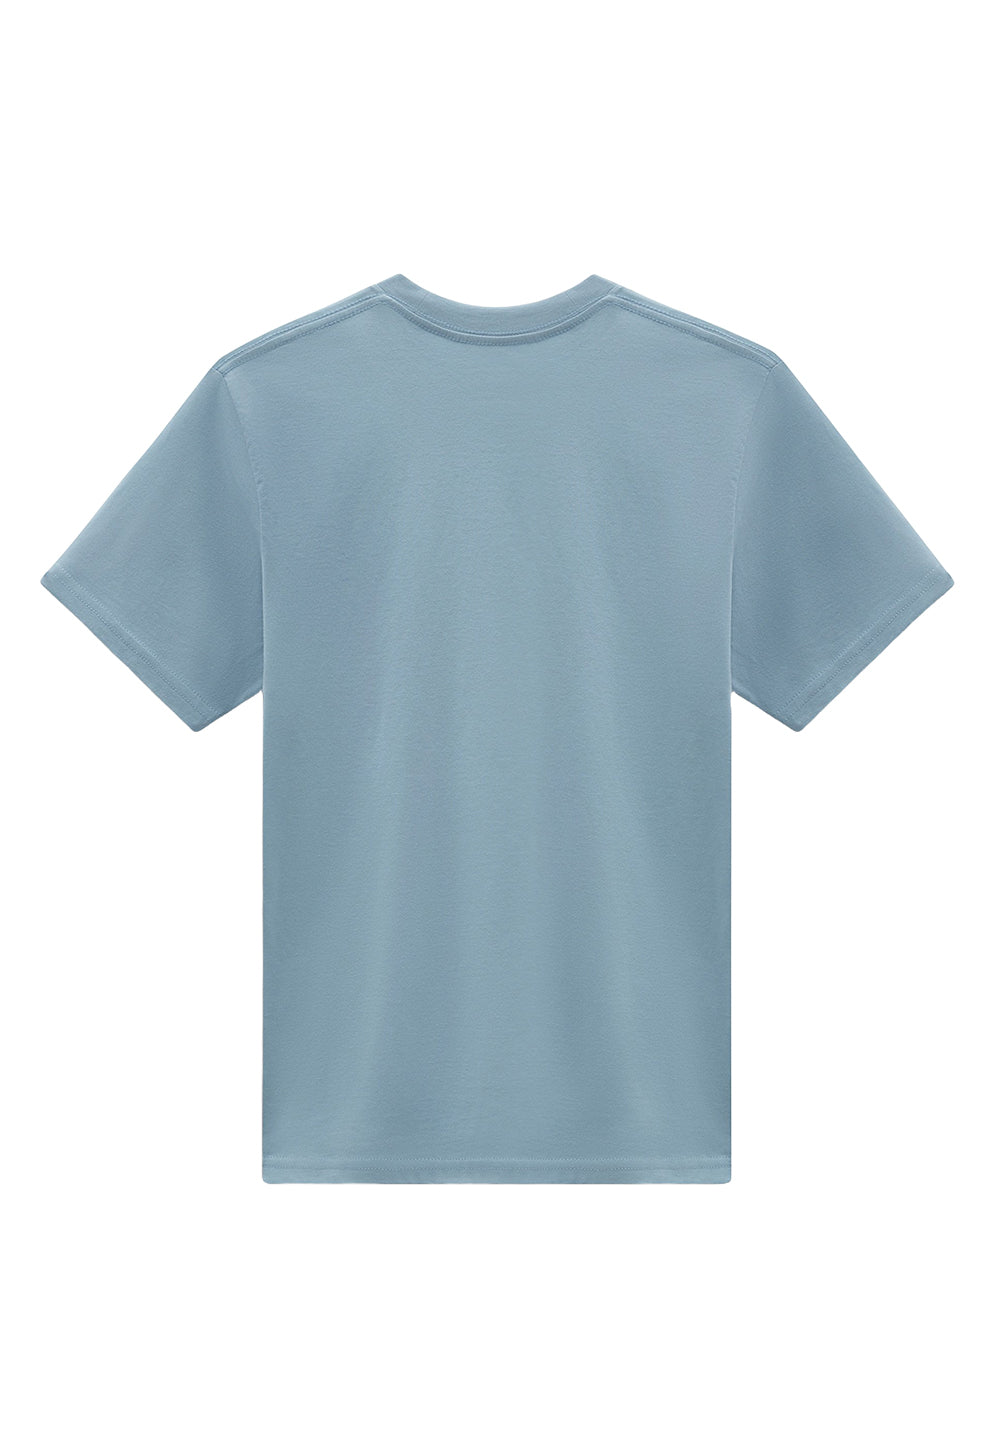 T-shirt celeste per bambino - Primamoda kids